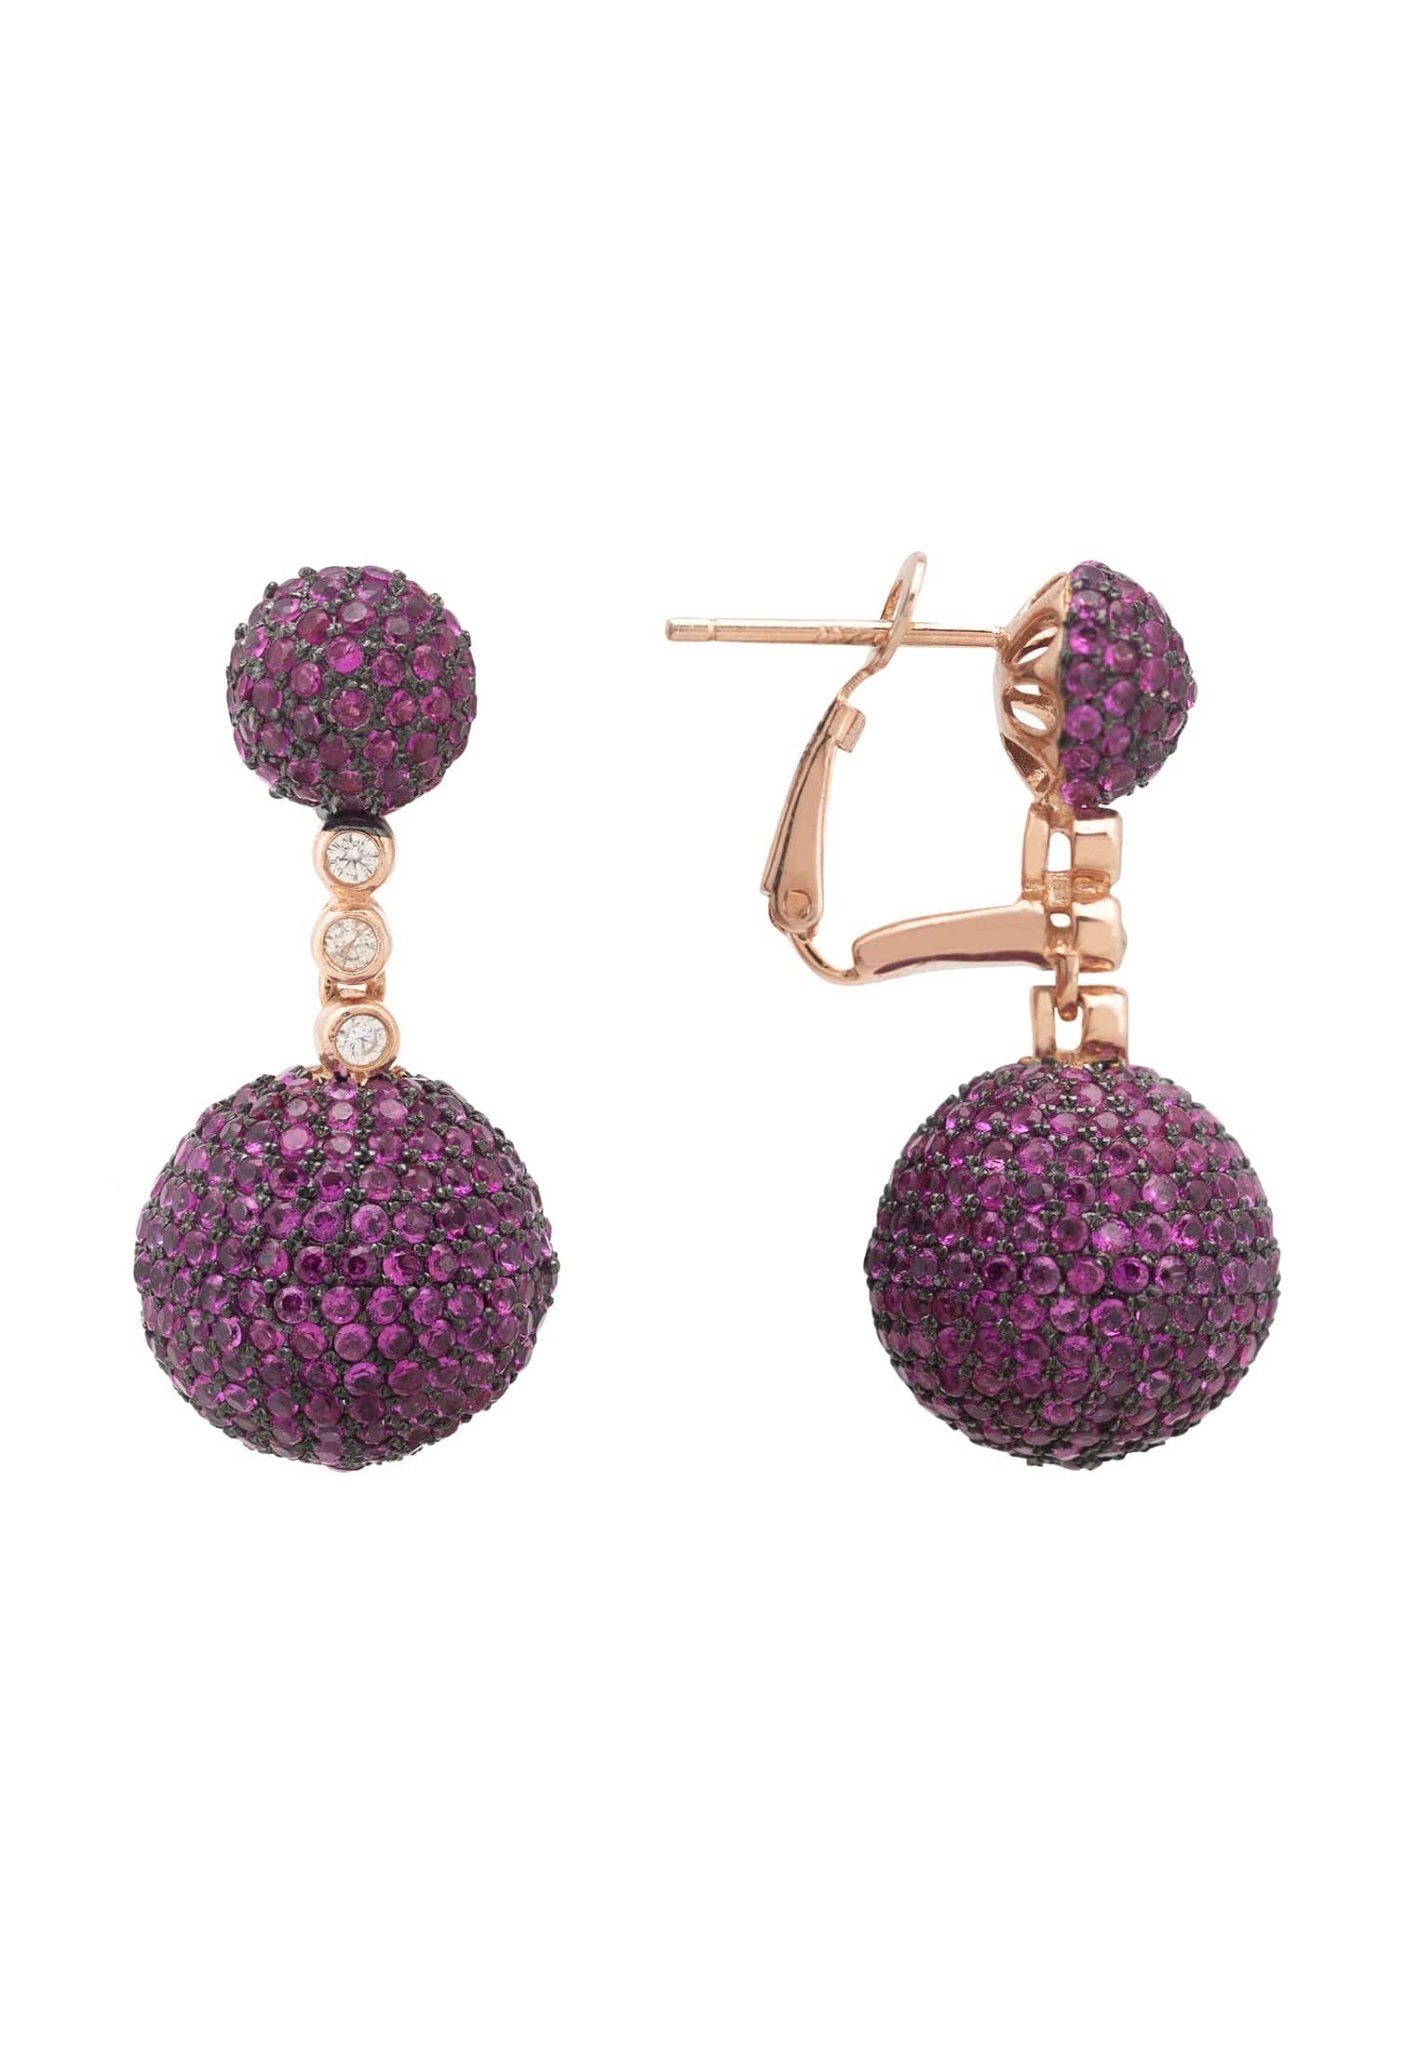 Monaco Sphere Drop Earrings Rosegold Ruby Pink Cz - LATELITA Earrings